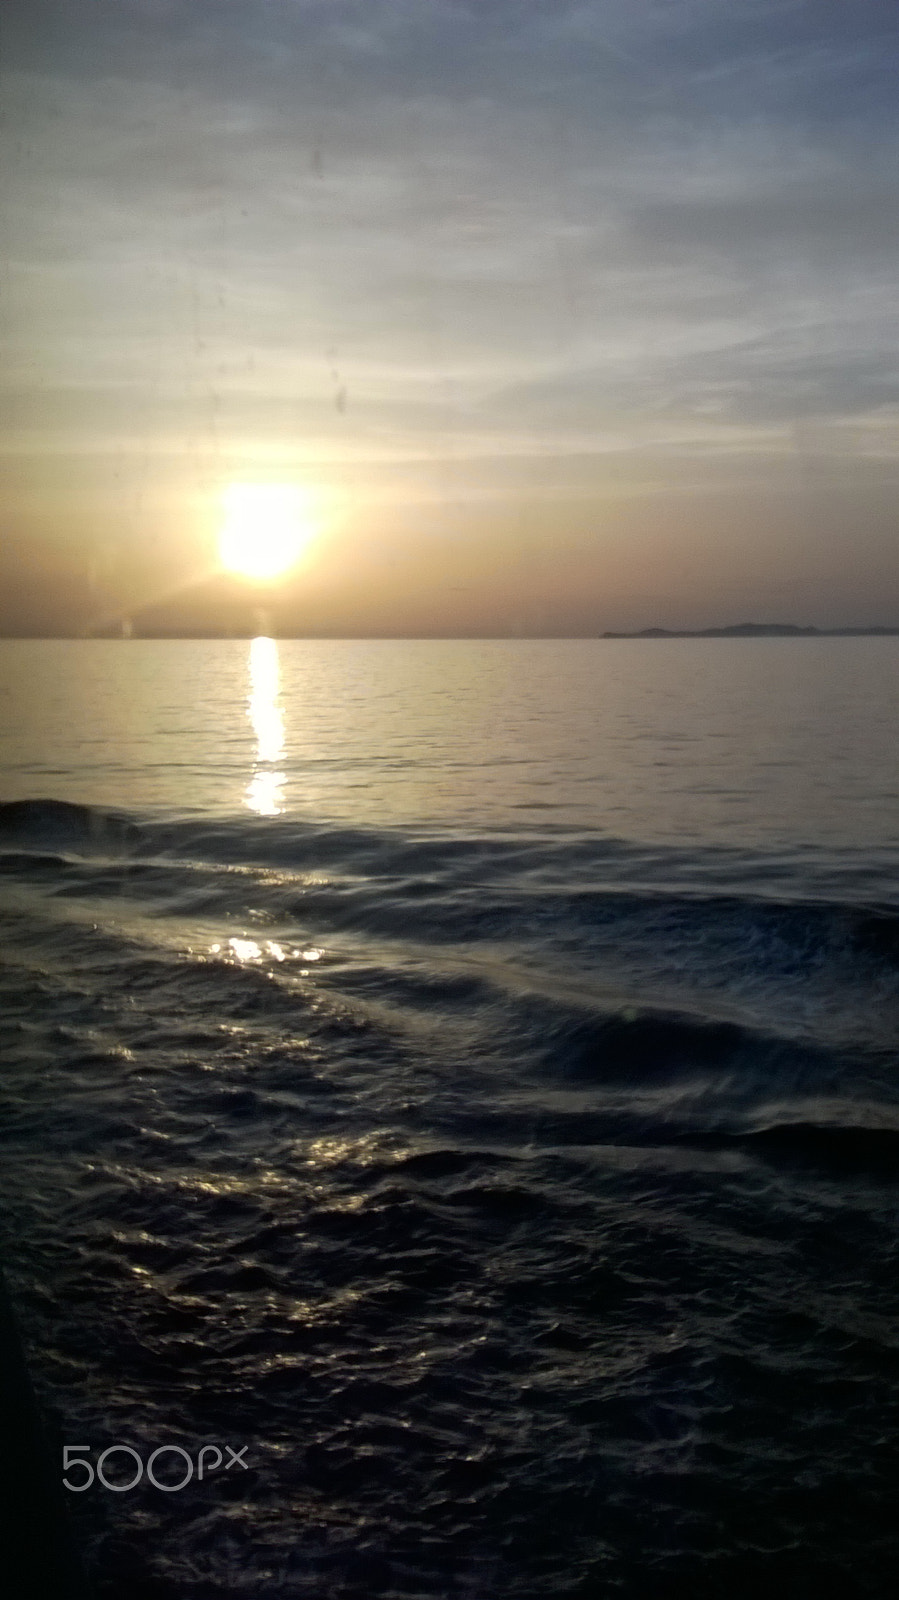 Nokia Lumia 630 sample photo. Sunset photography